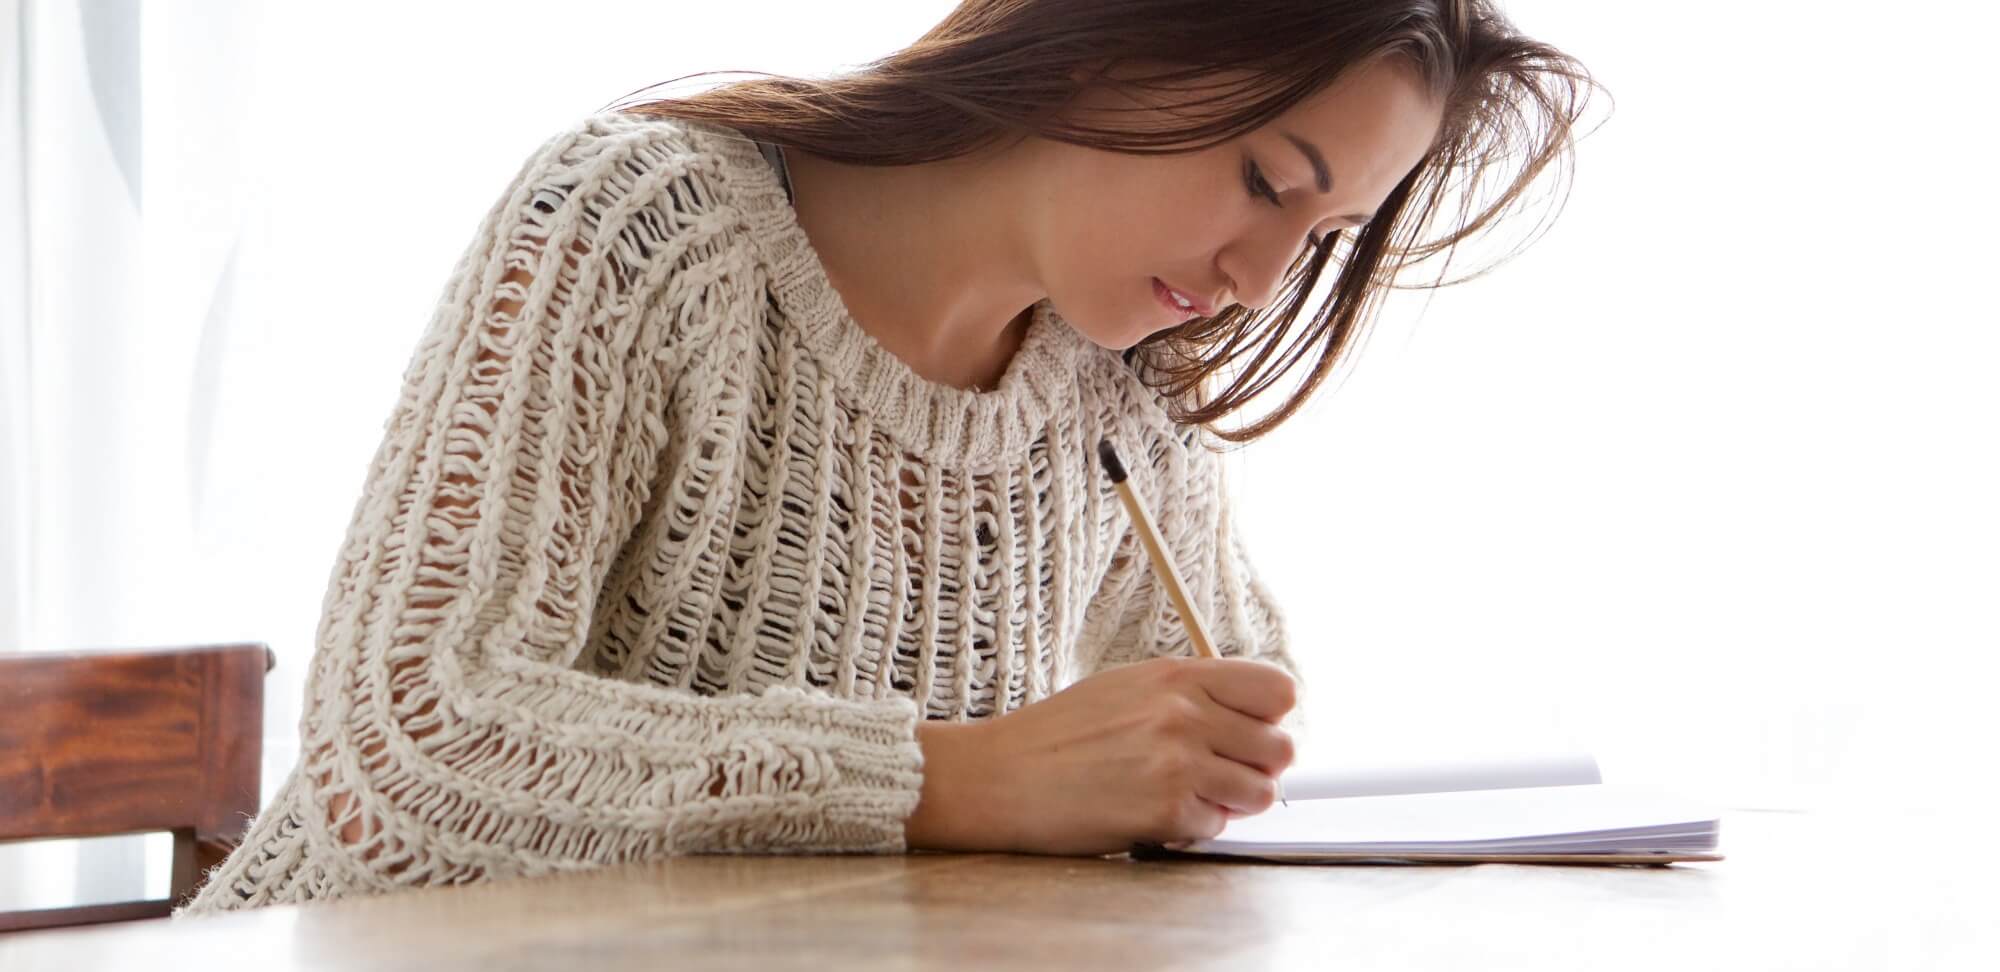 dicas de redação: imagem de uma moça estudando concentrada